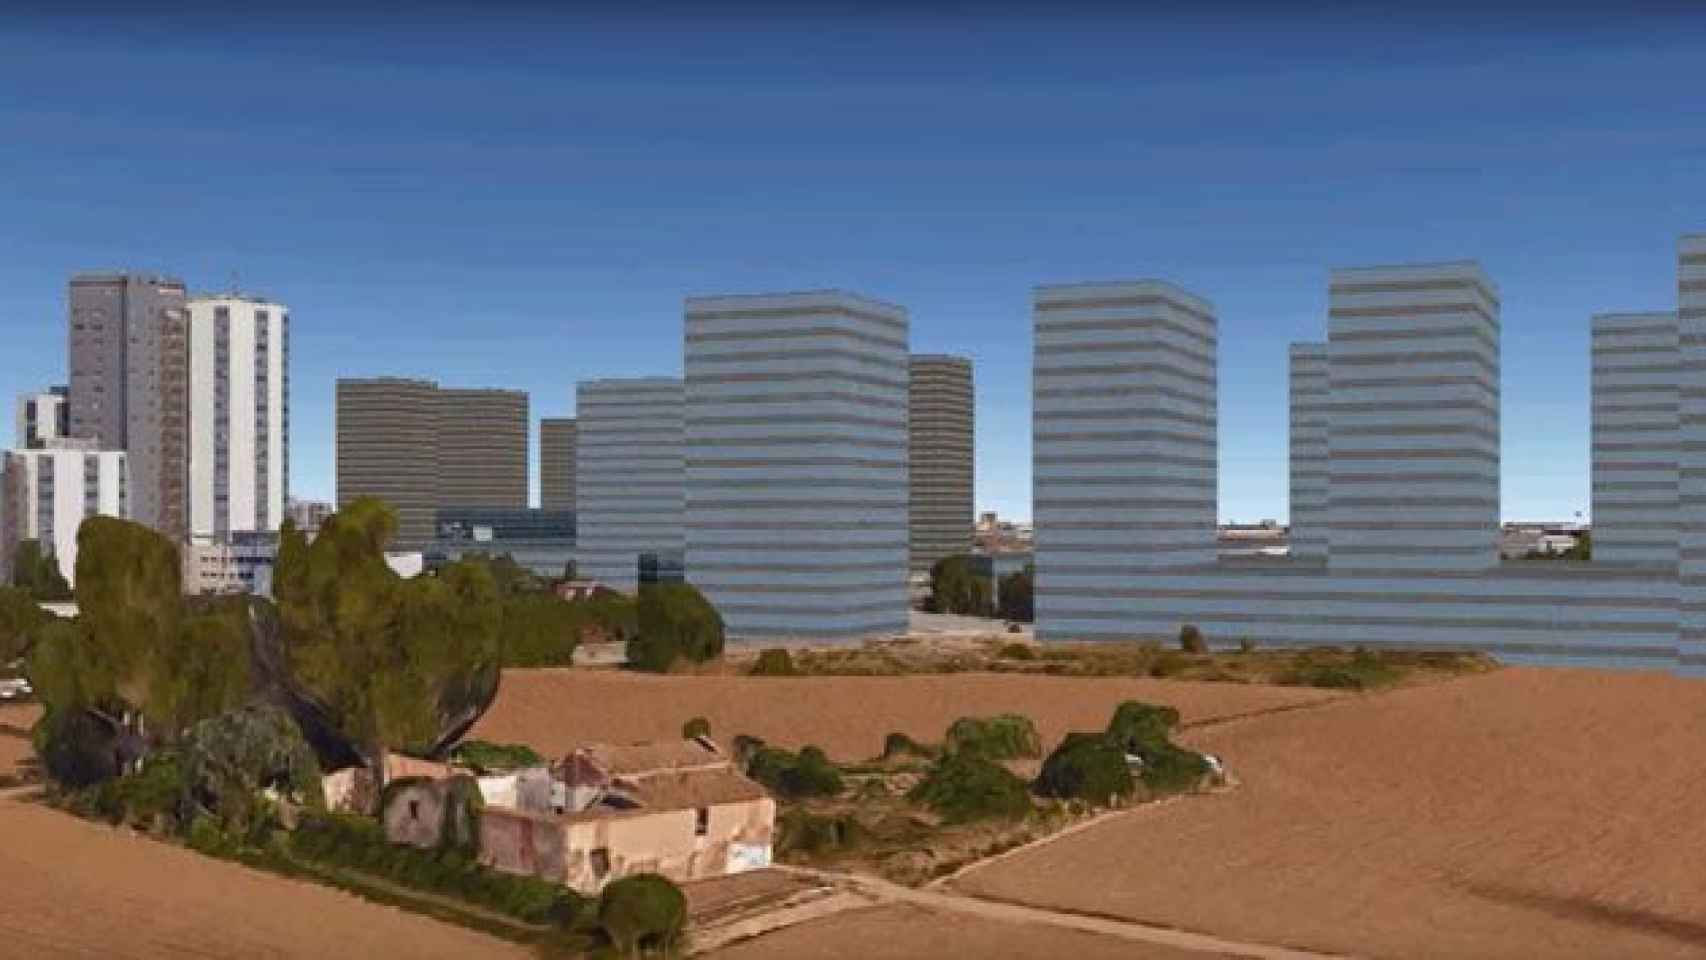 Imagen en 3D del proyecto de rascacielos de L'Hospitalet en la zona de Can Trabal / CG